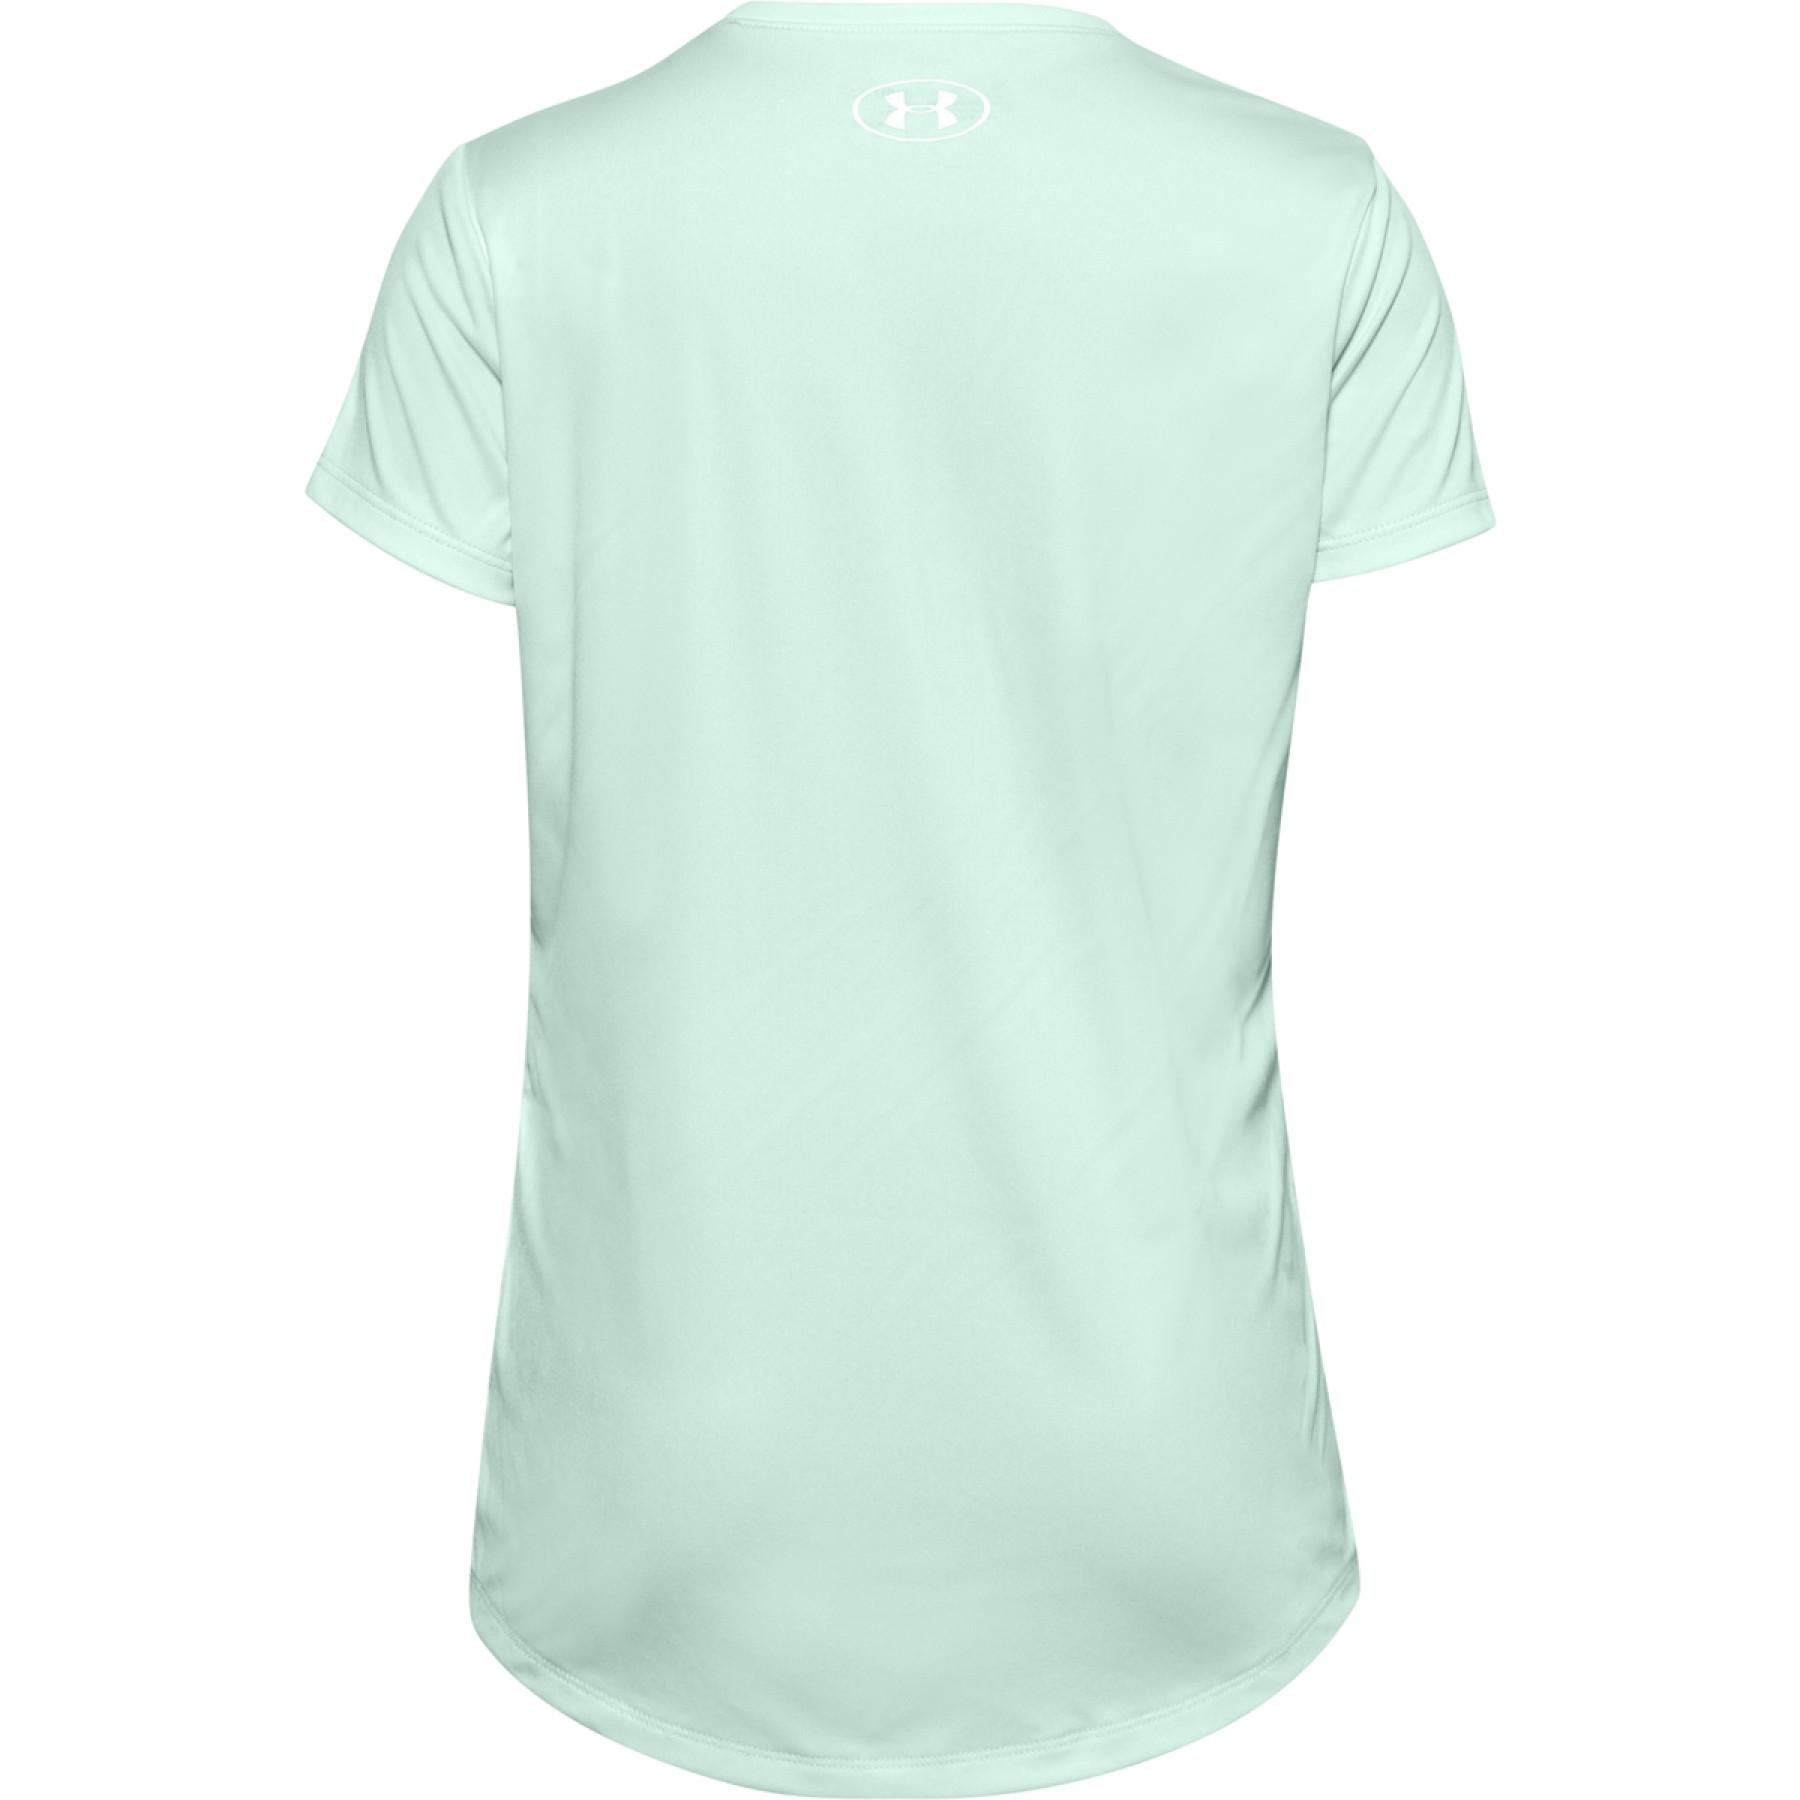 Mädchen-T-Shirt Under Armour à manches courtes Tech Big Logo